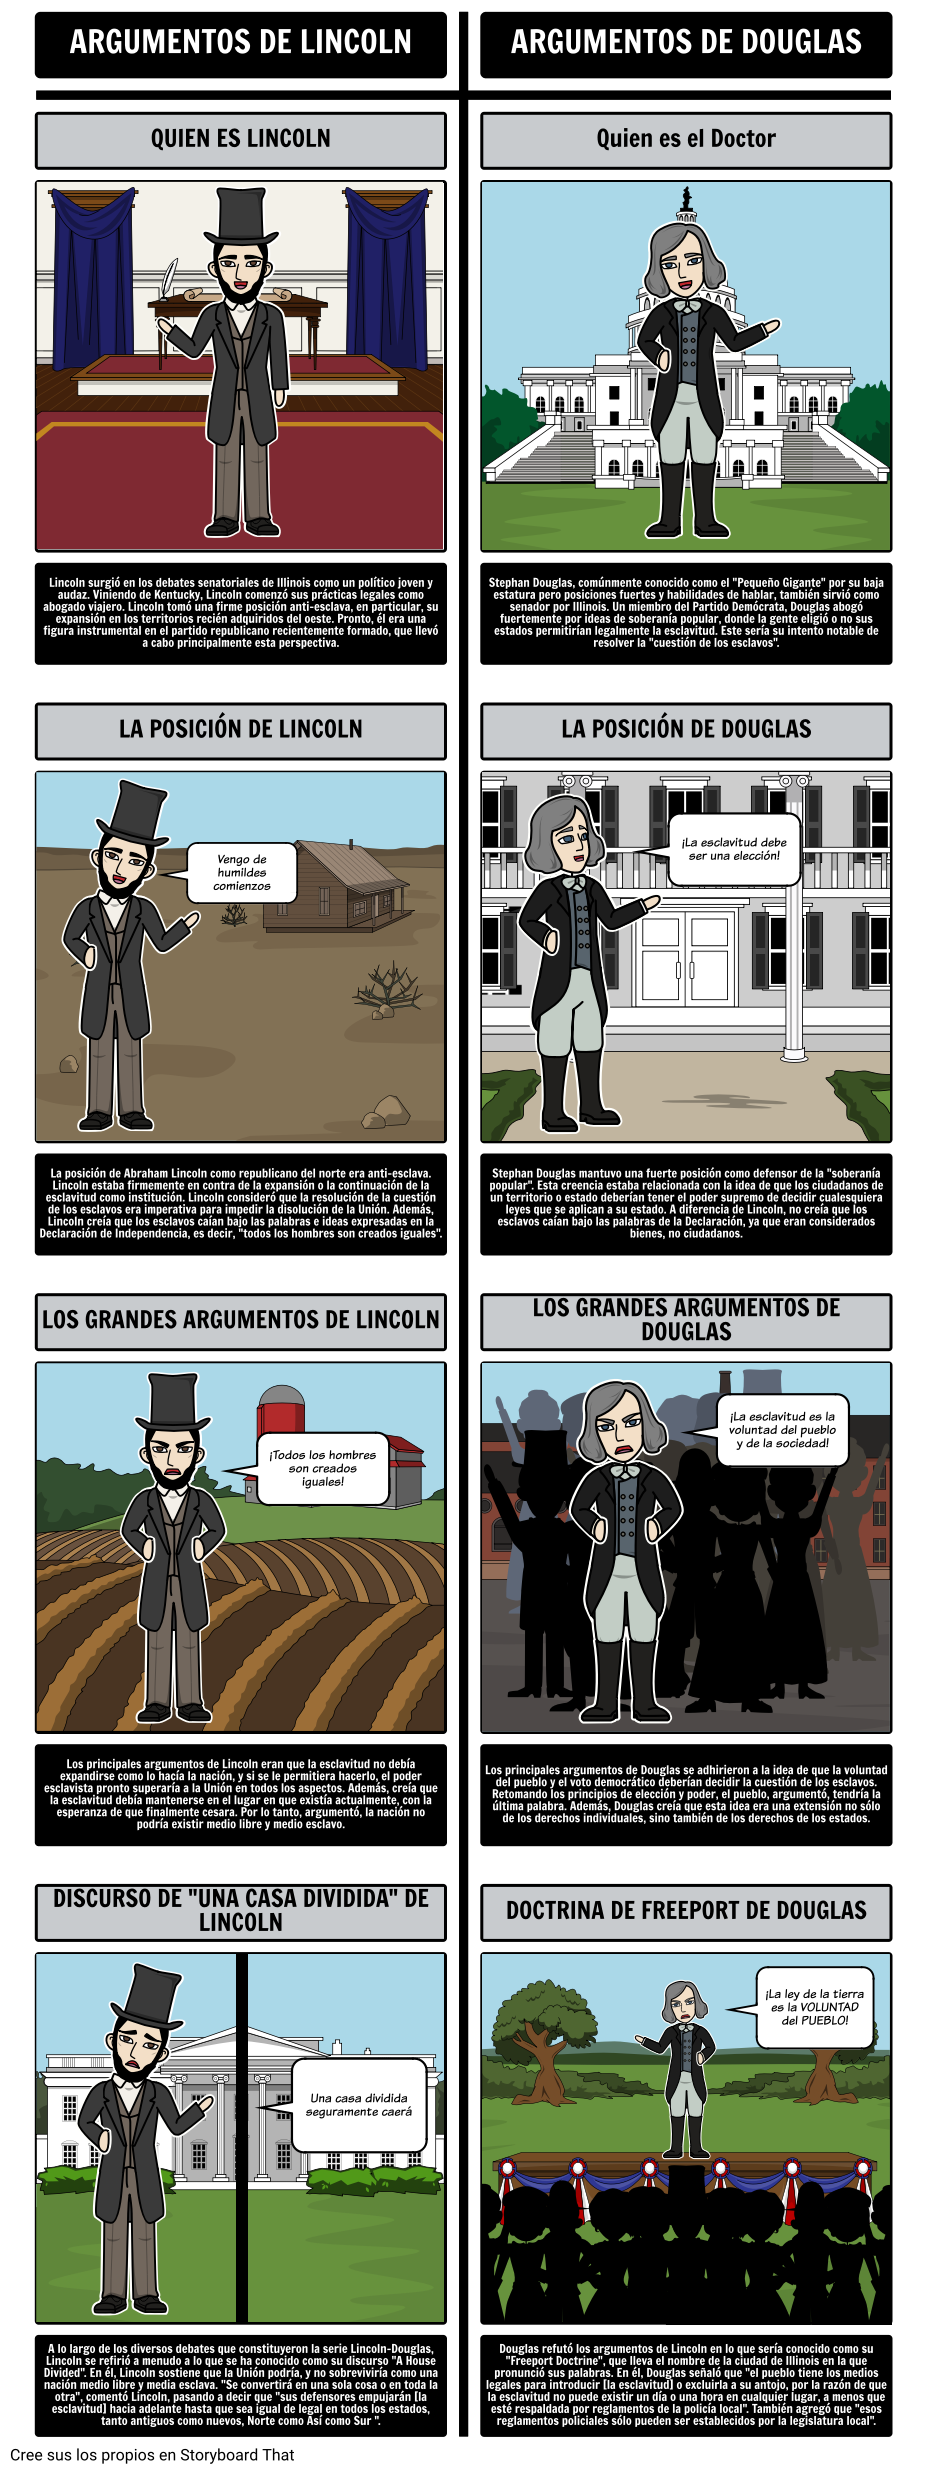 1850s América - Lincoln / Douglas Debates Senatoriales de 1854